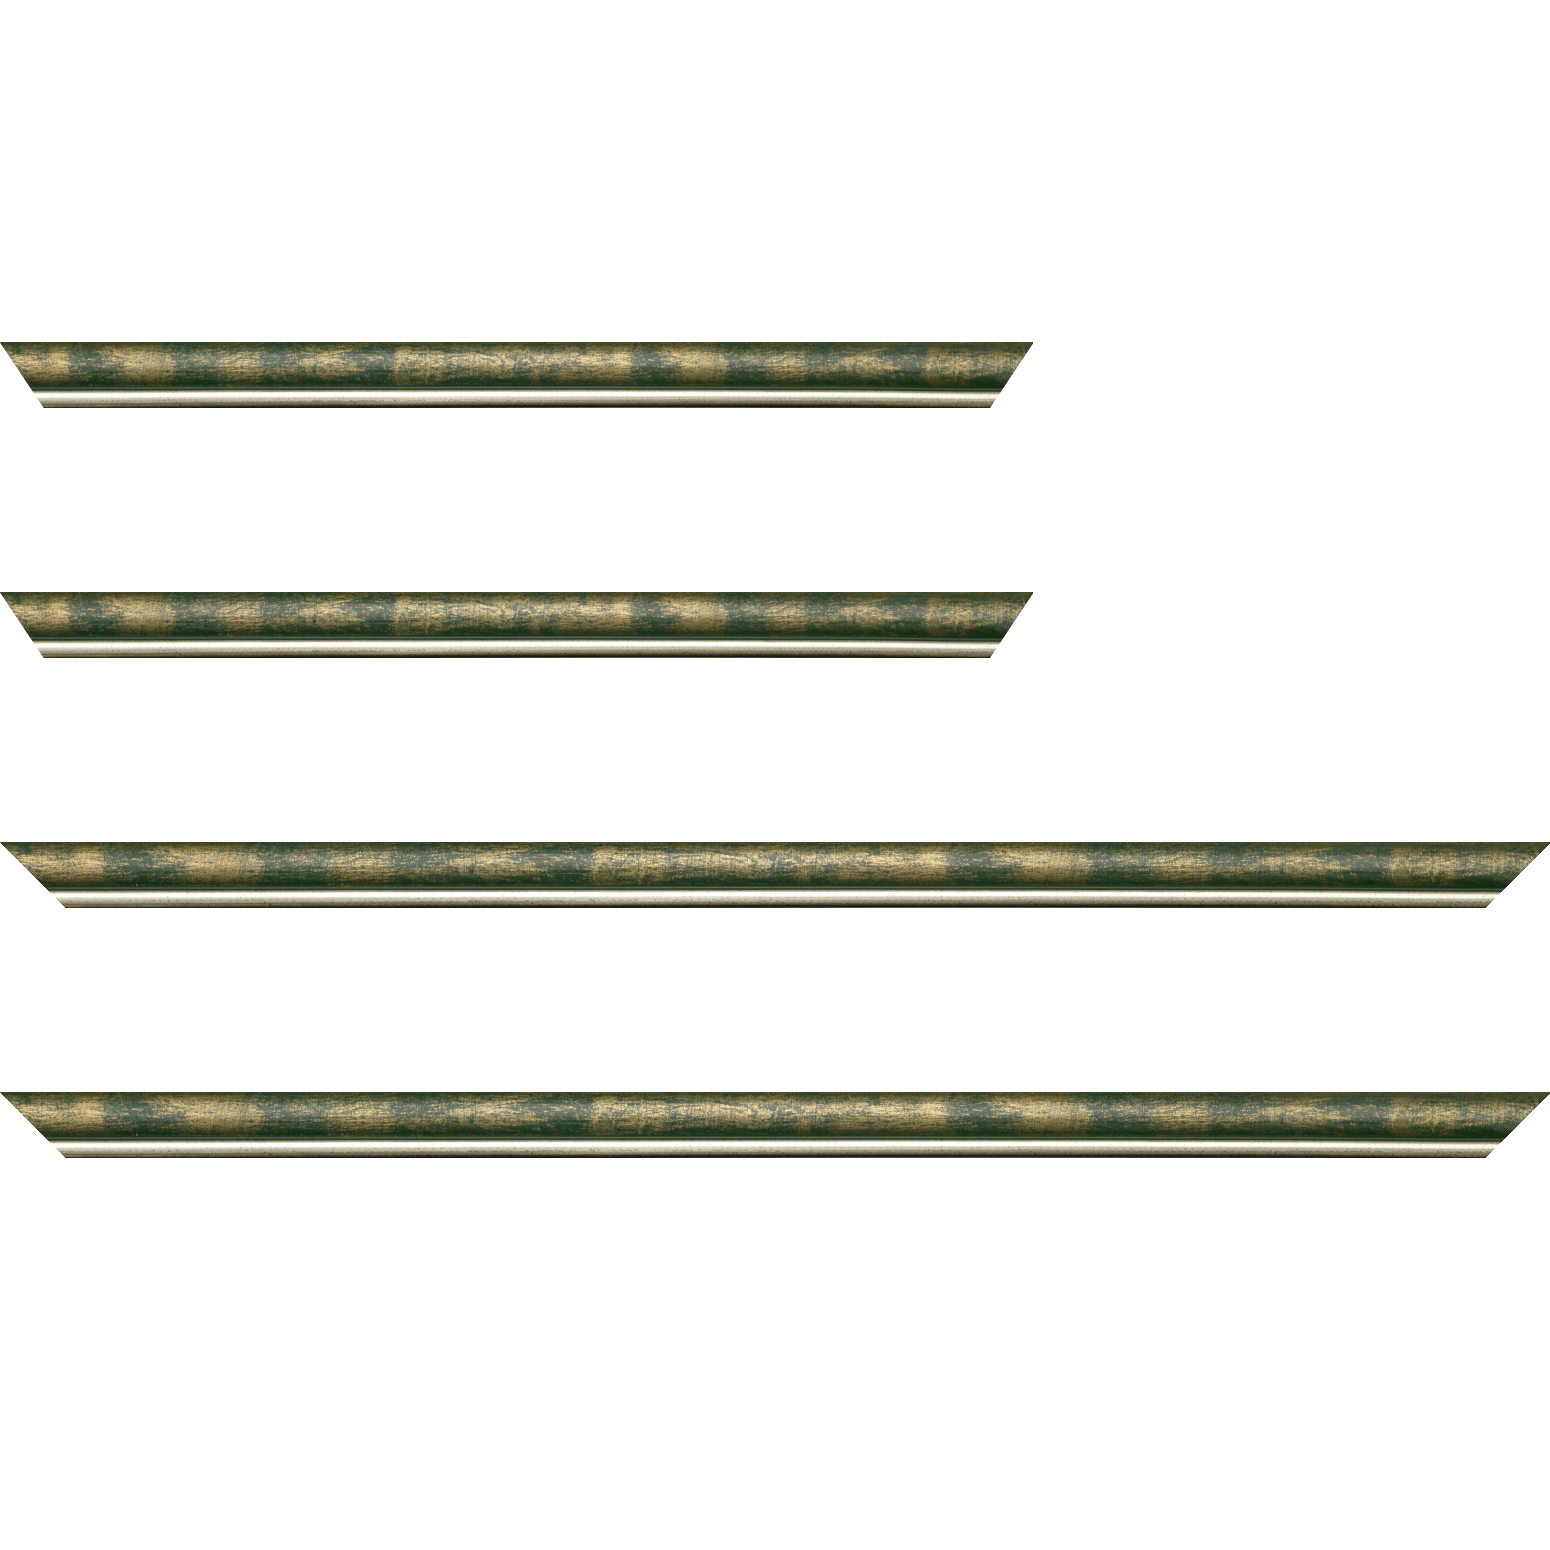 Baguette bois profil arrondi largeur 2.1cm  couleur vert fond or filet argent chaud - 50x60